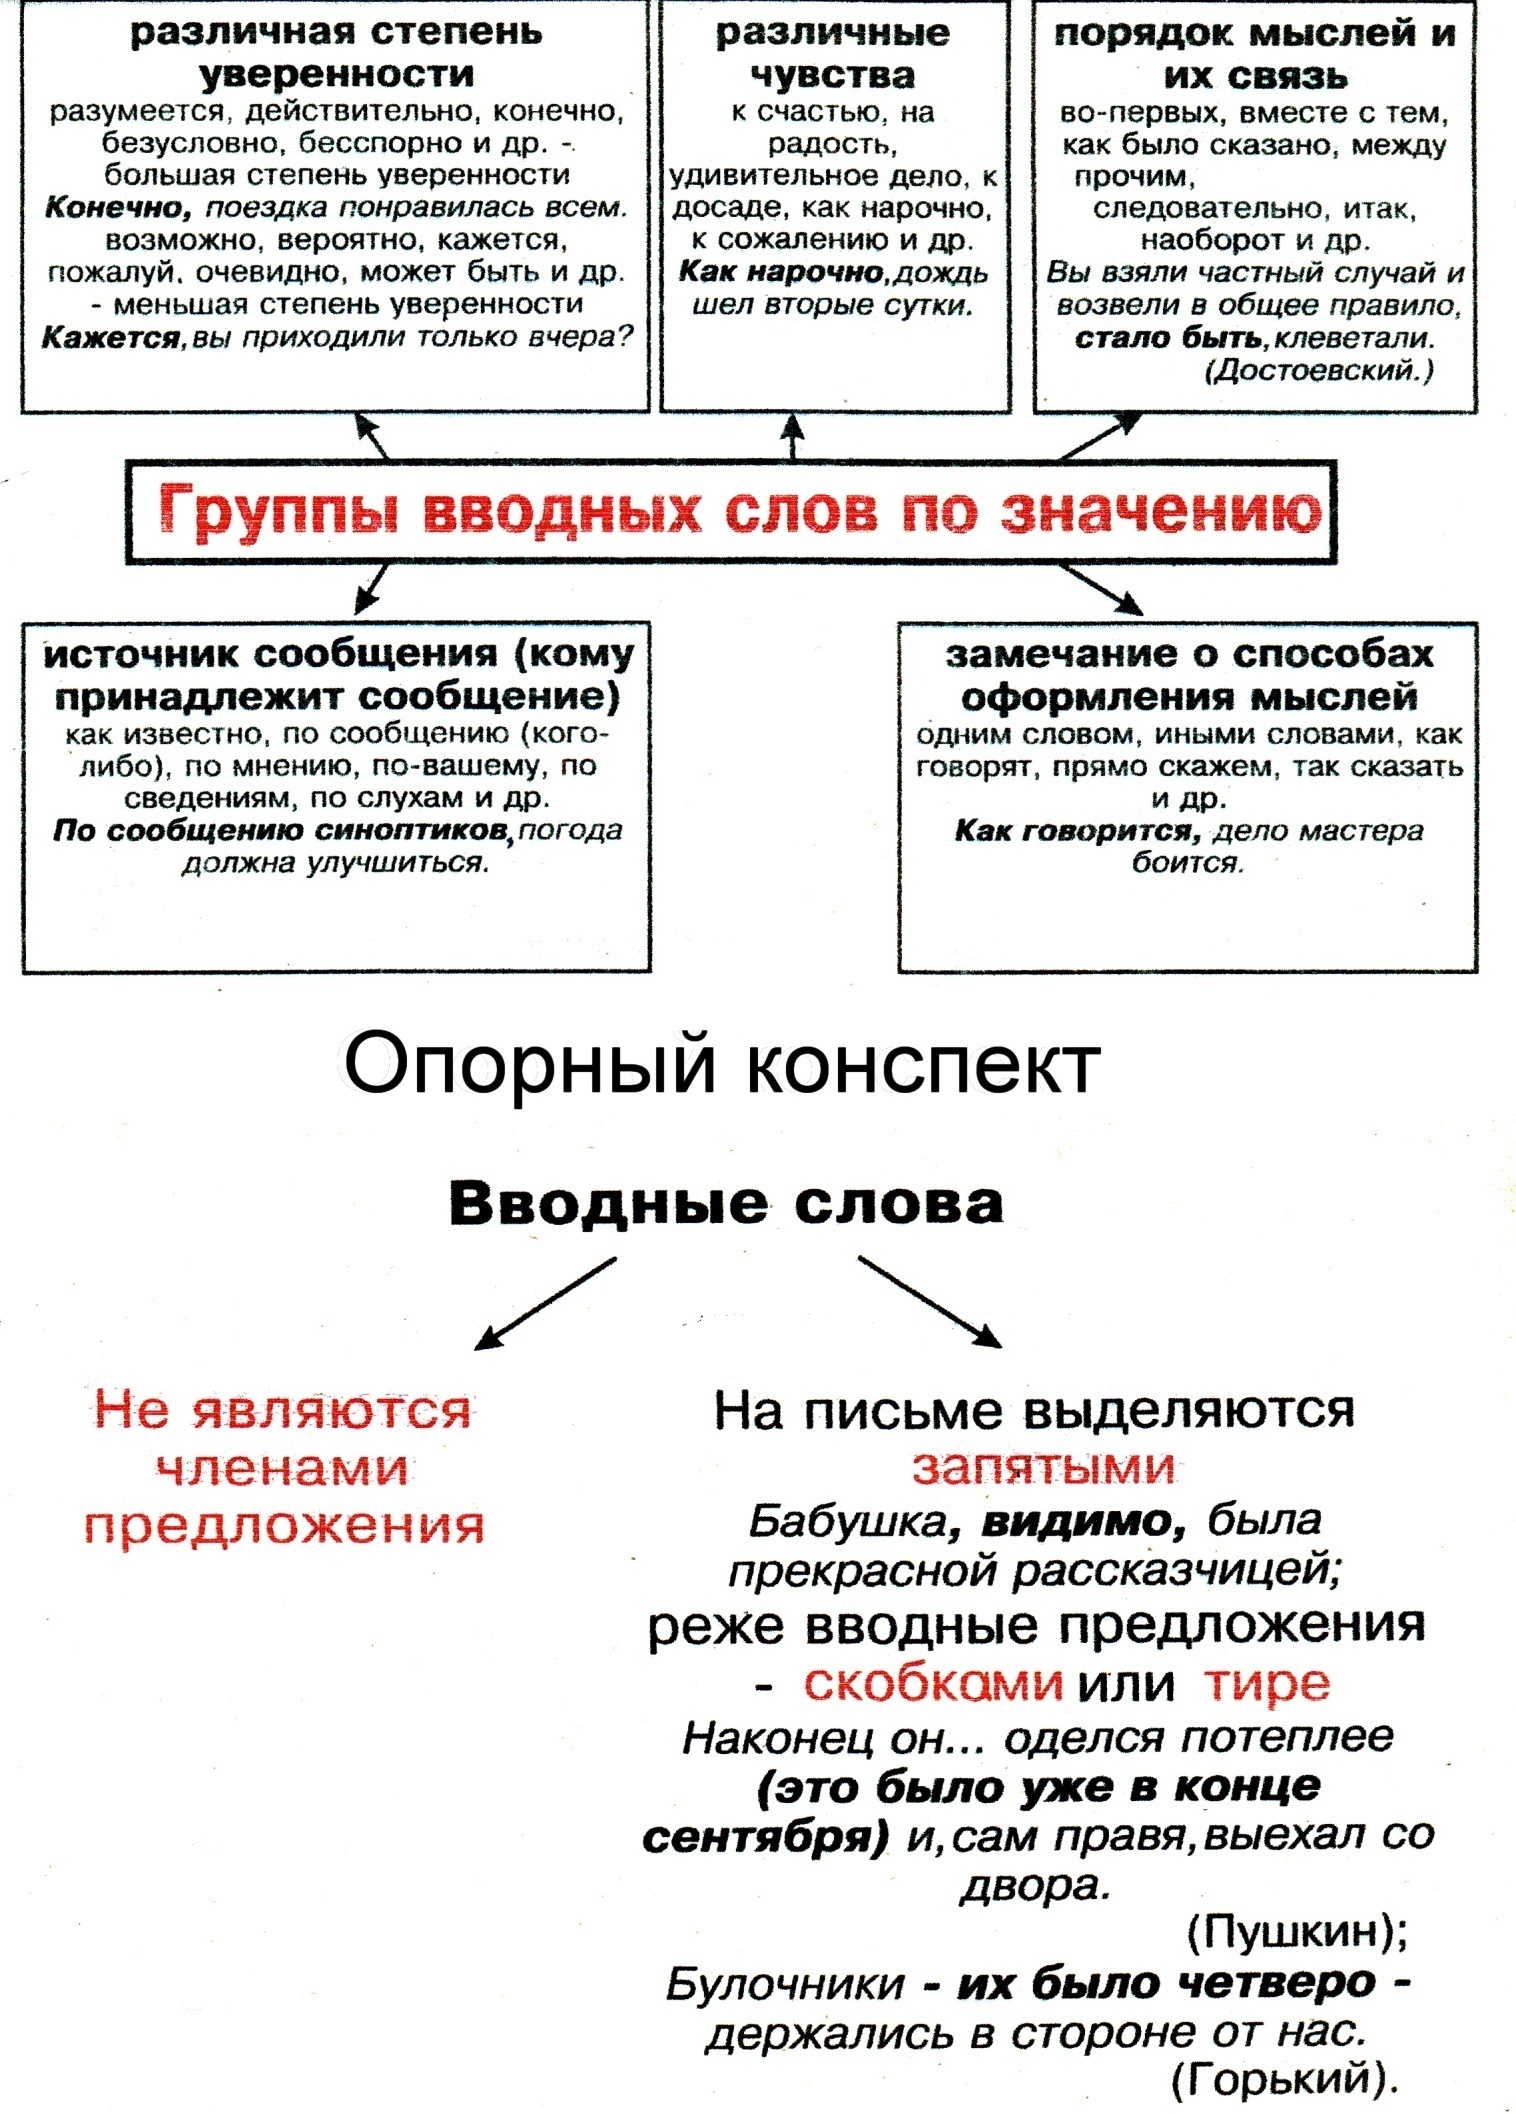 Конспект урока русского языка в 8 классе по теме Группы вводных слов по значению